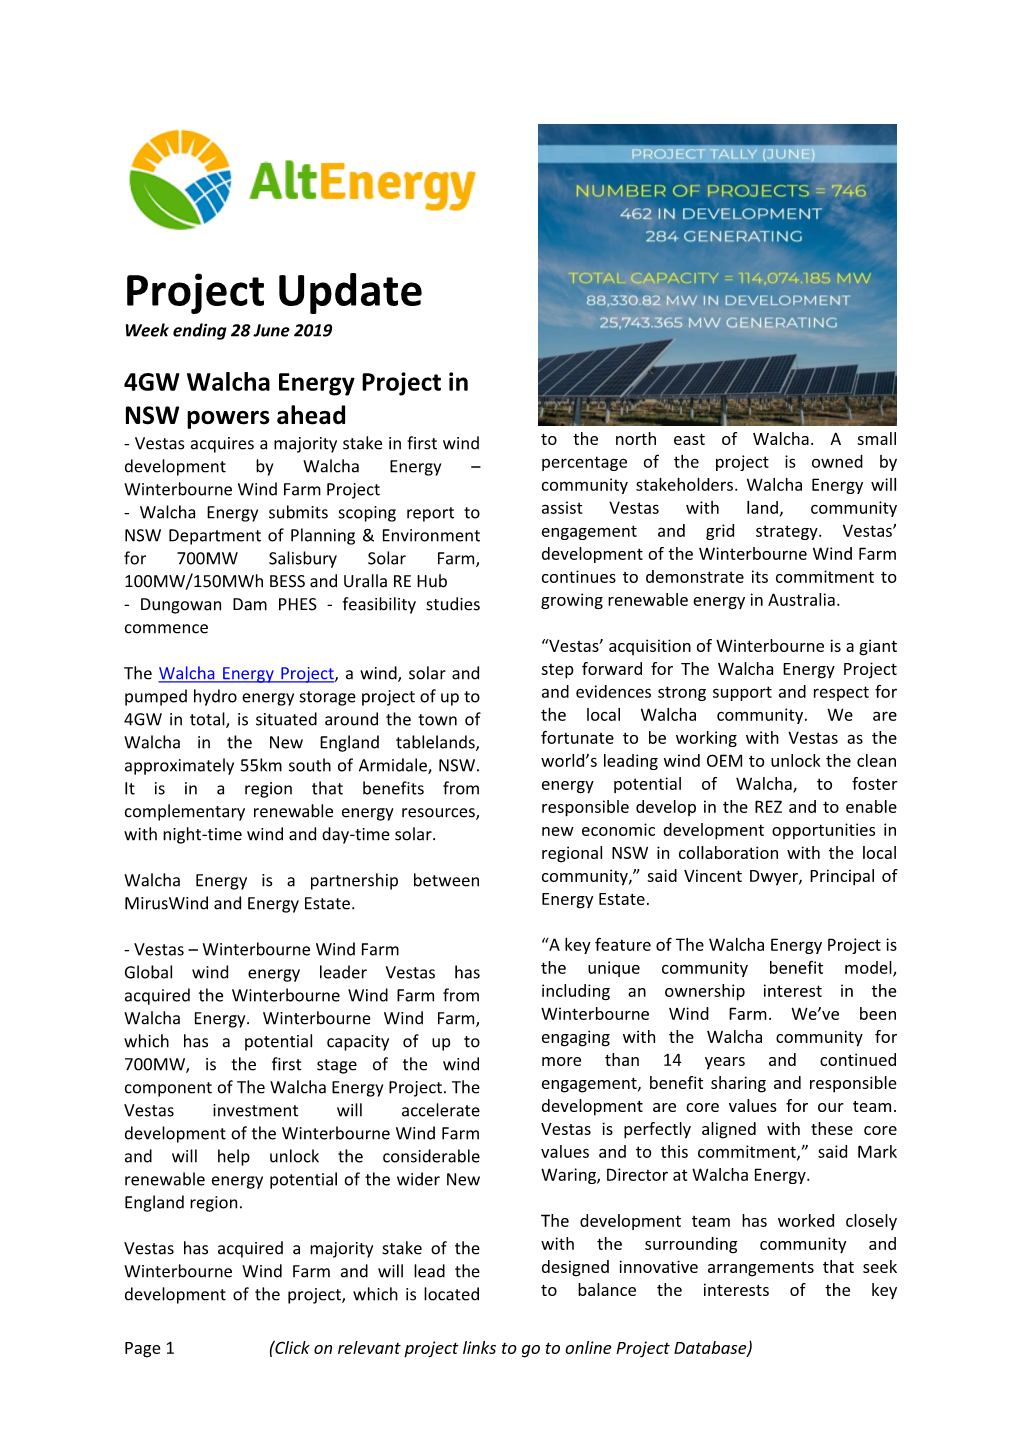 Project Update Week Ending 28 June 2019